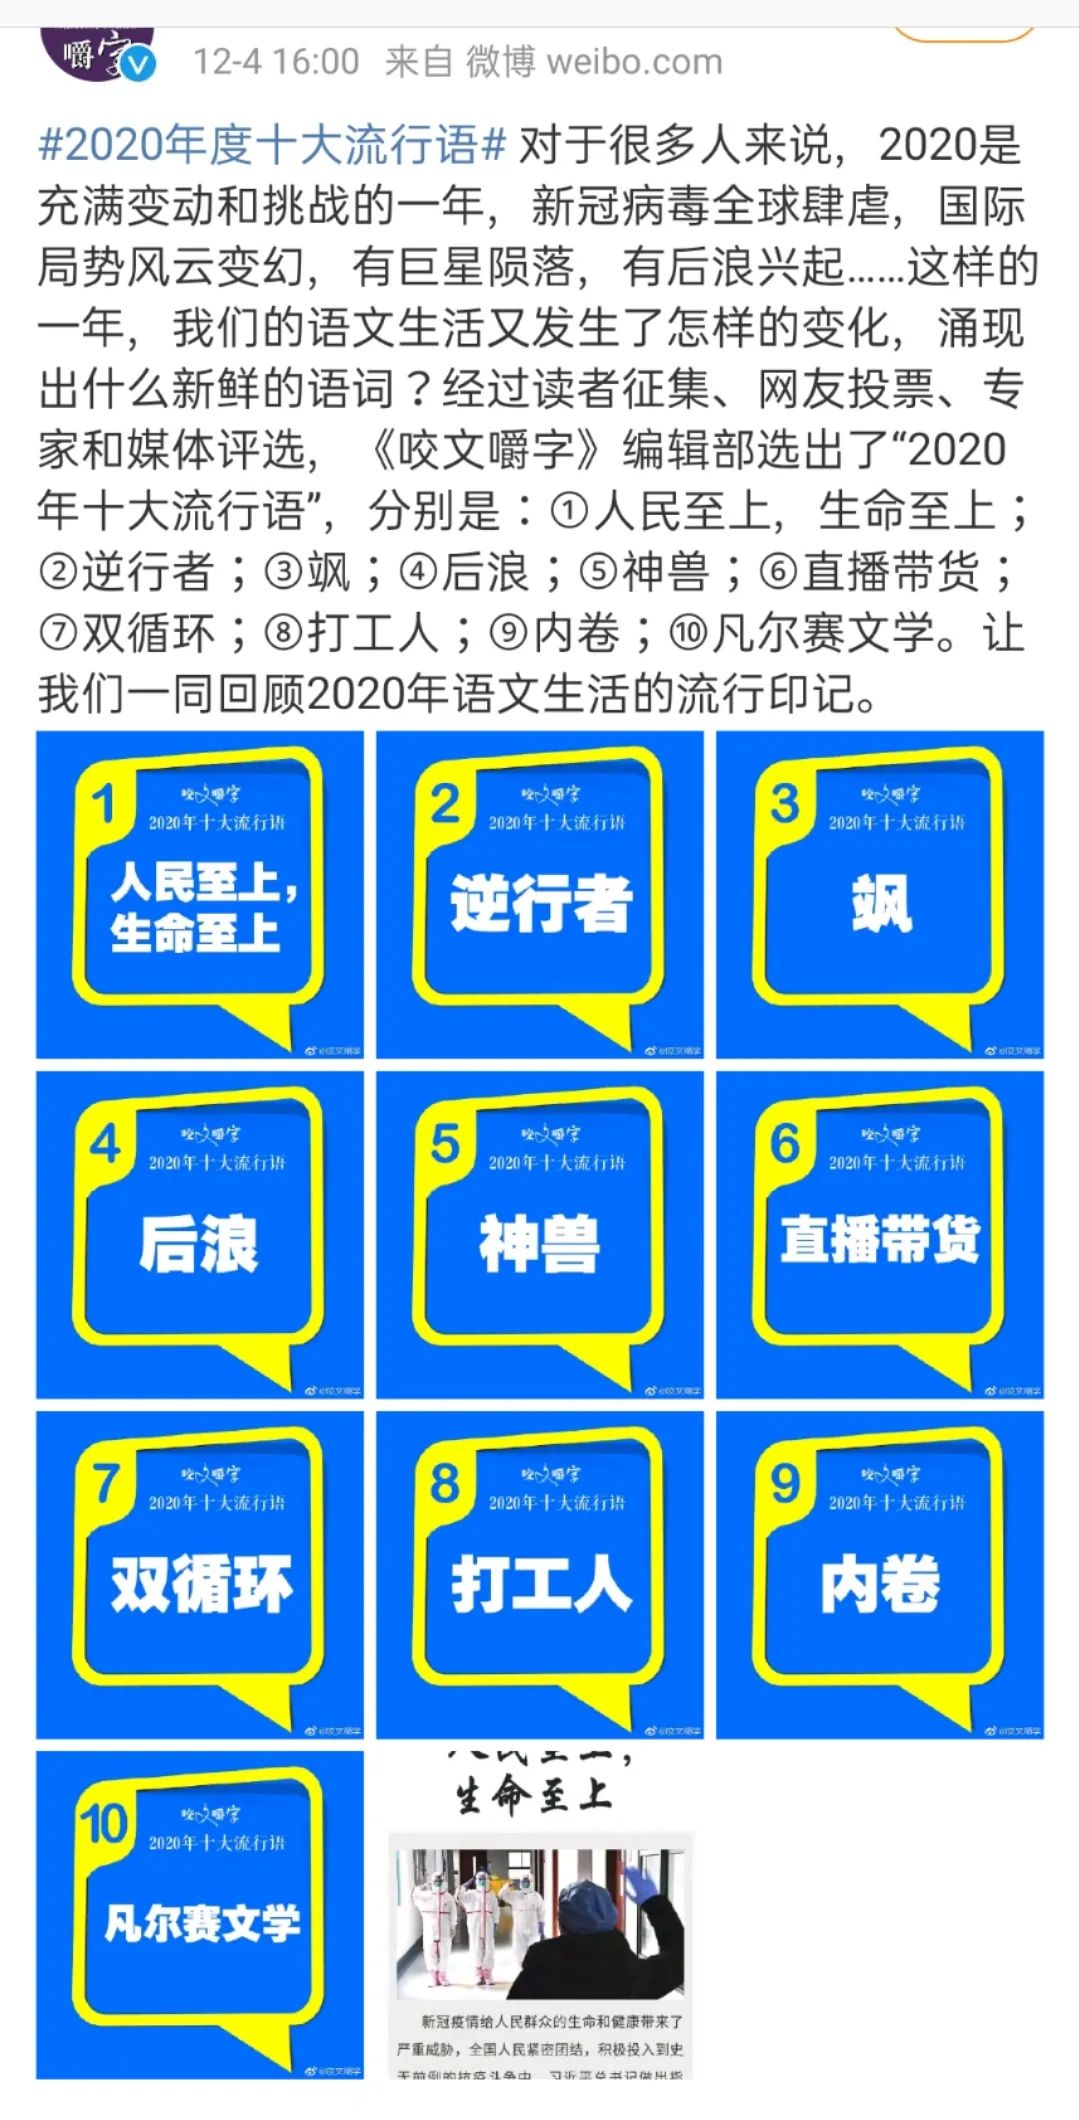 蓝白色现代2019十大最受欢迎热词/网络用语中文海报 - 模板 - Canva可画